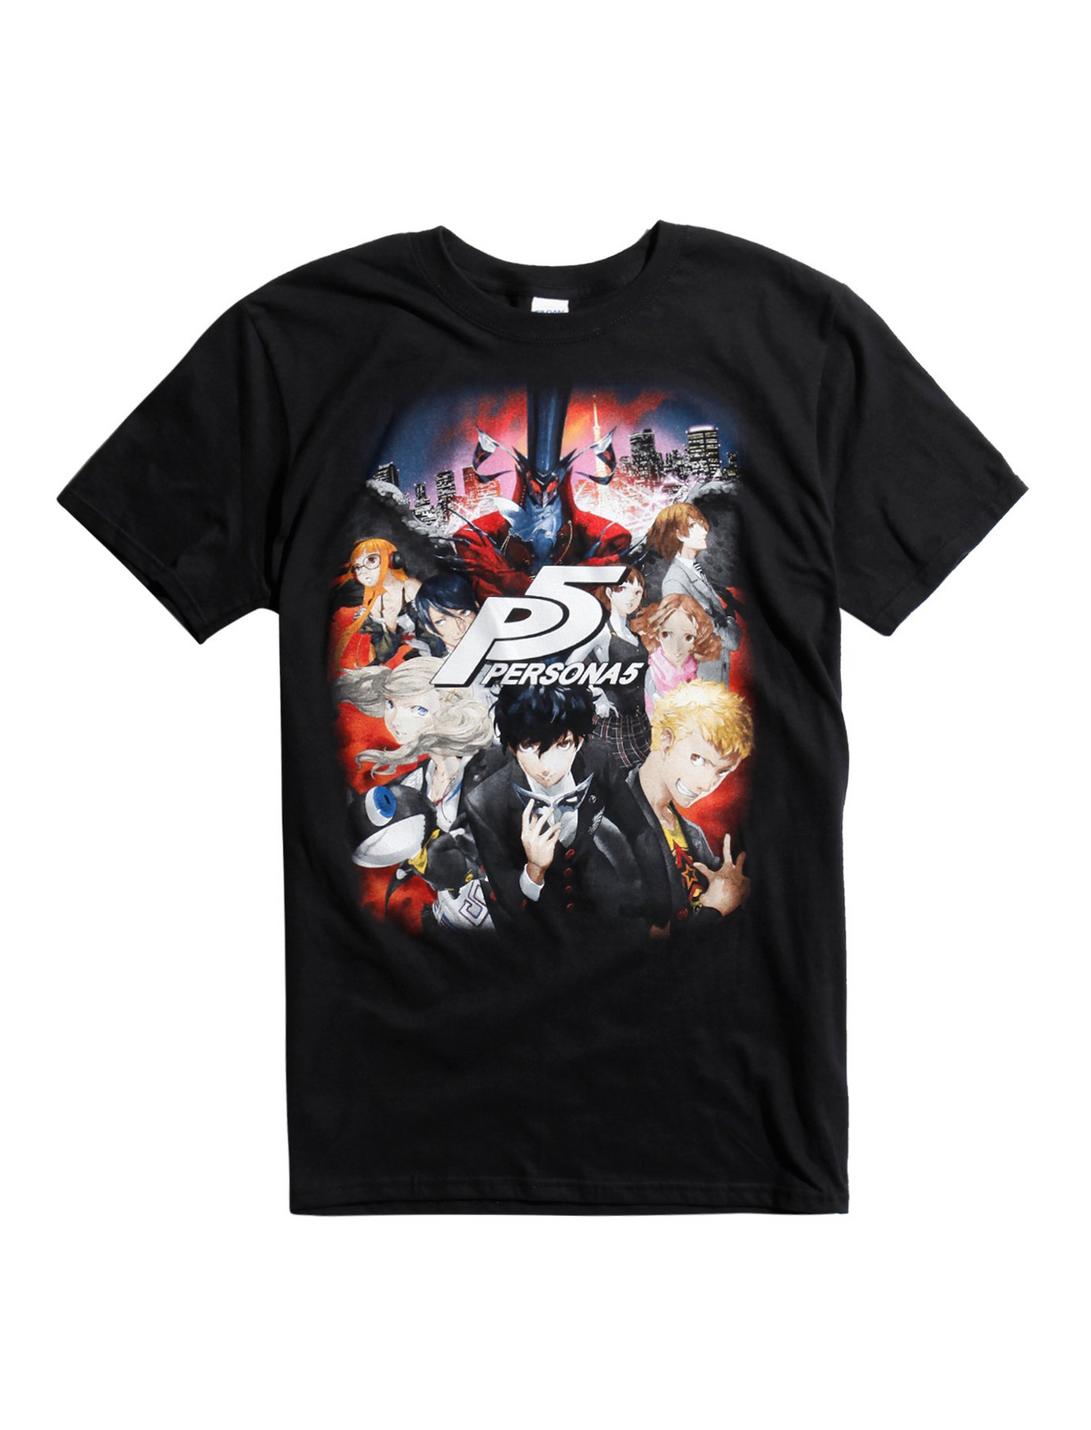 Persona 5 Characters T-Shirt, BLACK, hi-res